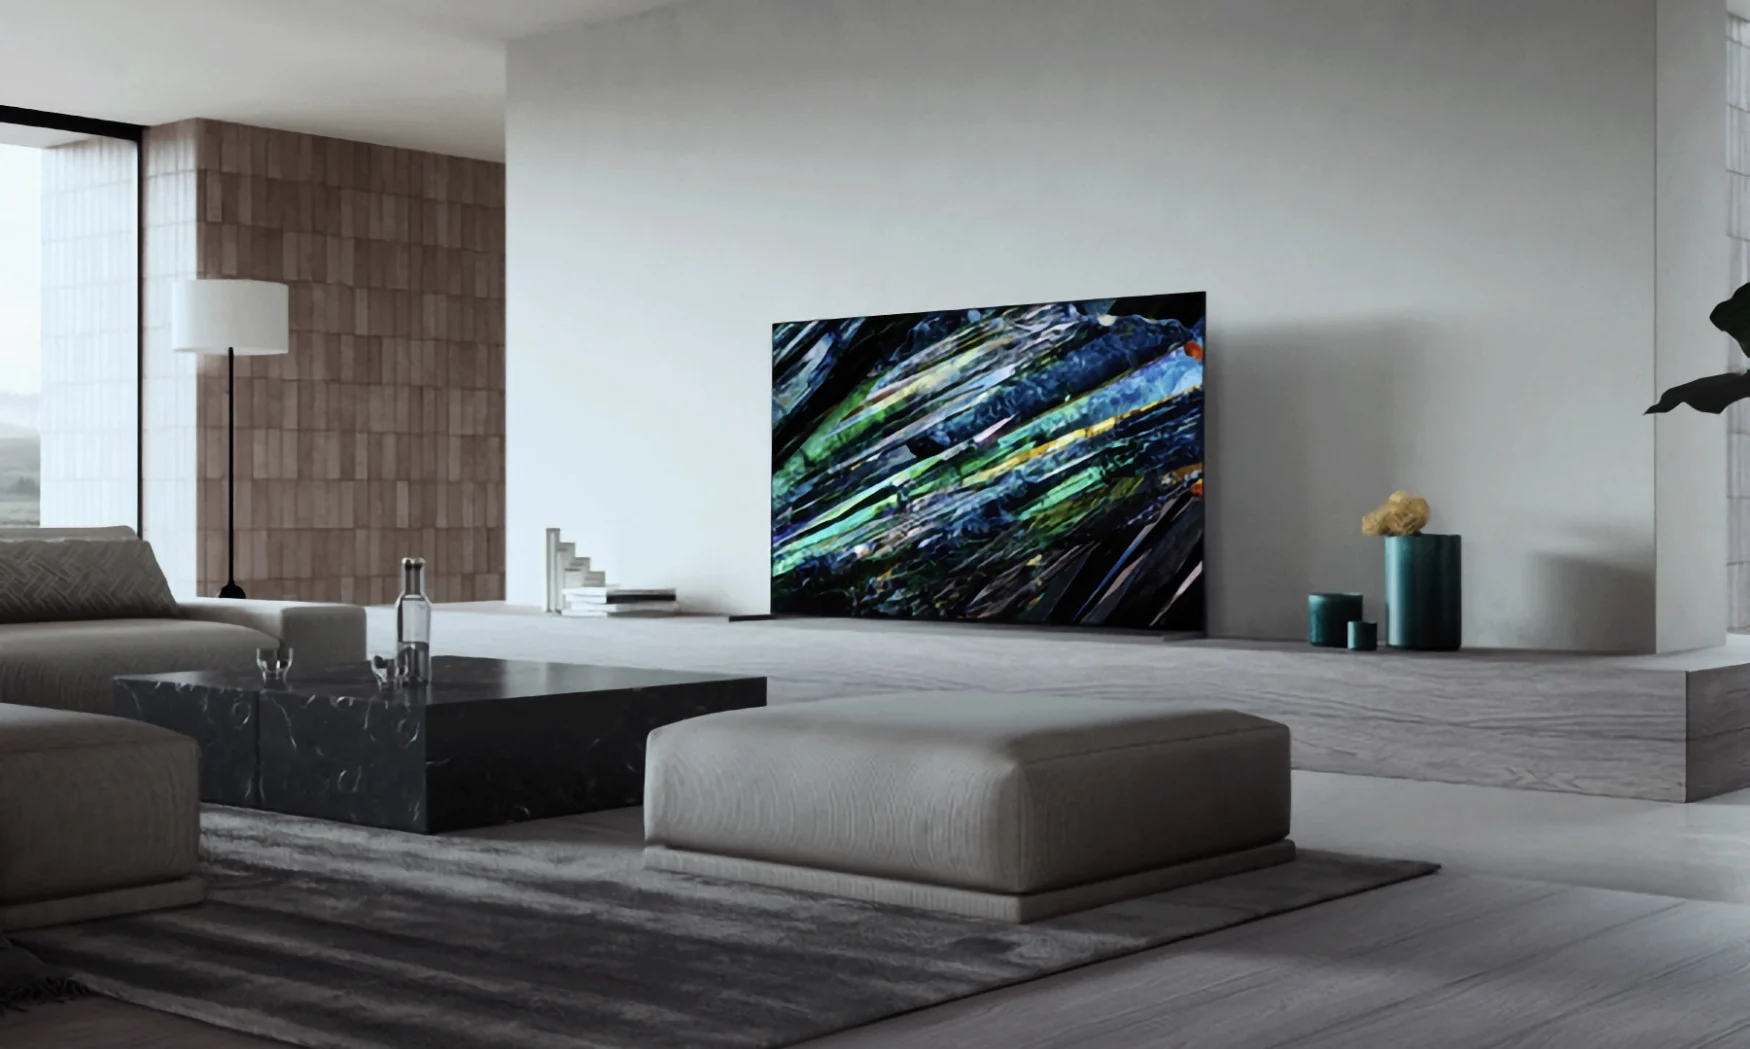 Marketingfoto des Sony A95L-Fernsehers in einem vornehmen Wohnzimmer.  Moderne graue Ästhetik mit eleganten Möbeln und raumhohen Fenstern auf der linken Seite.